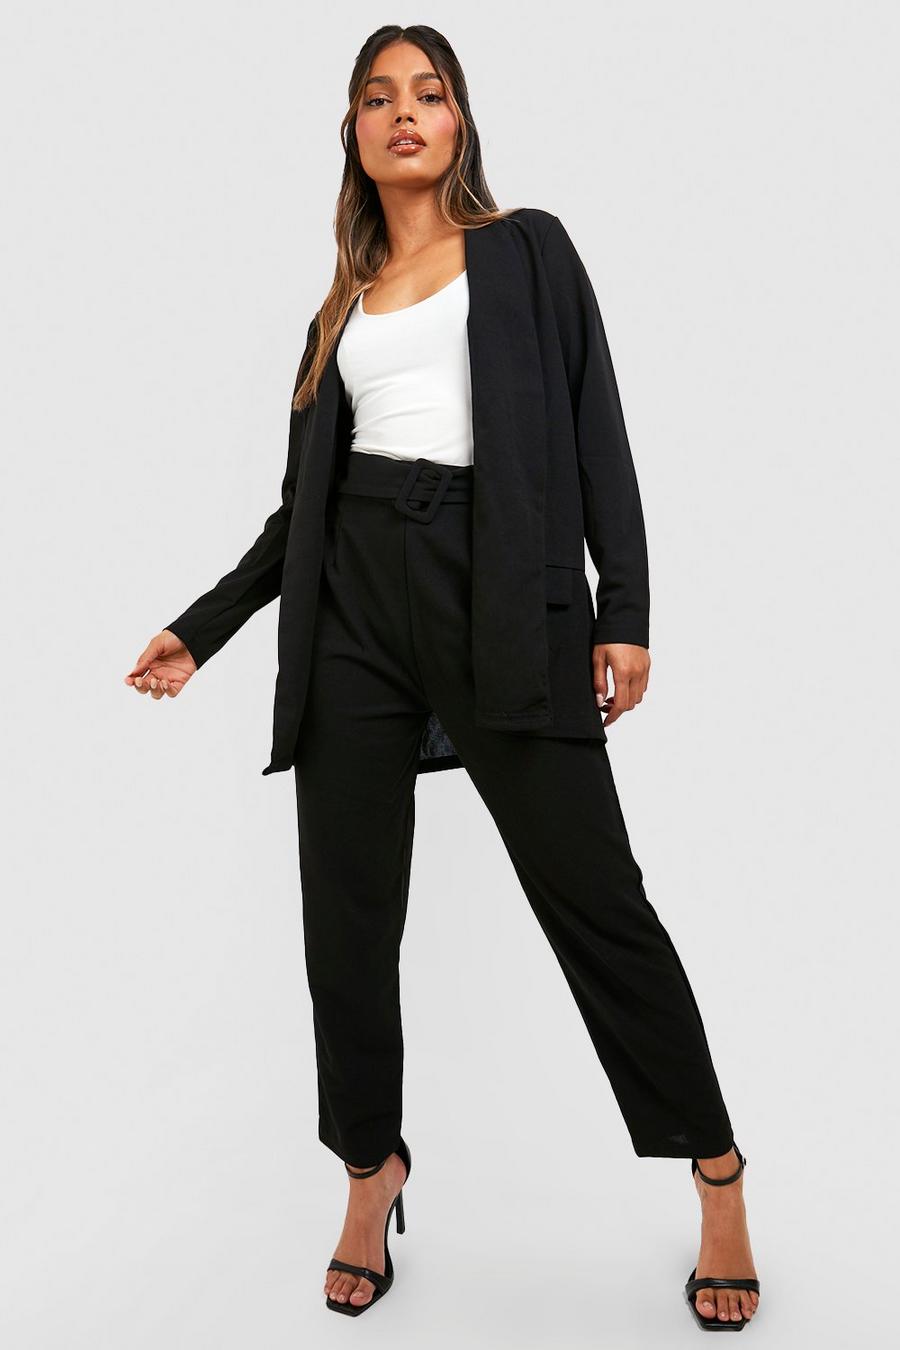 שחור black סט חליפה בלייזר מחויט ומכנסיים עם חגורה מאותו הבד